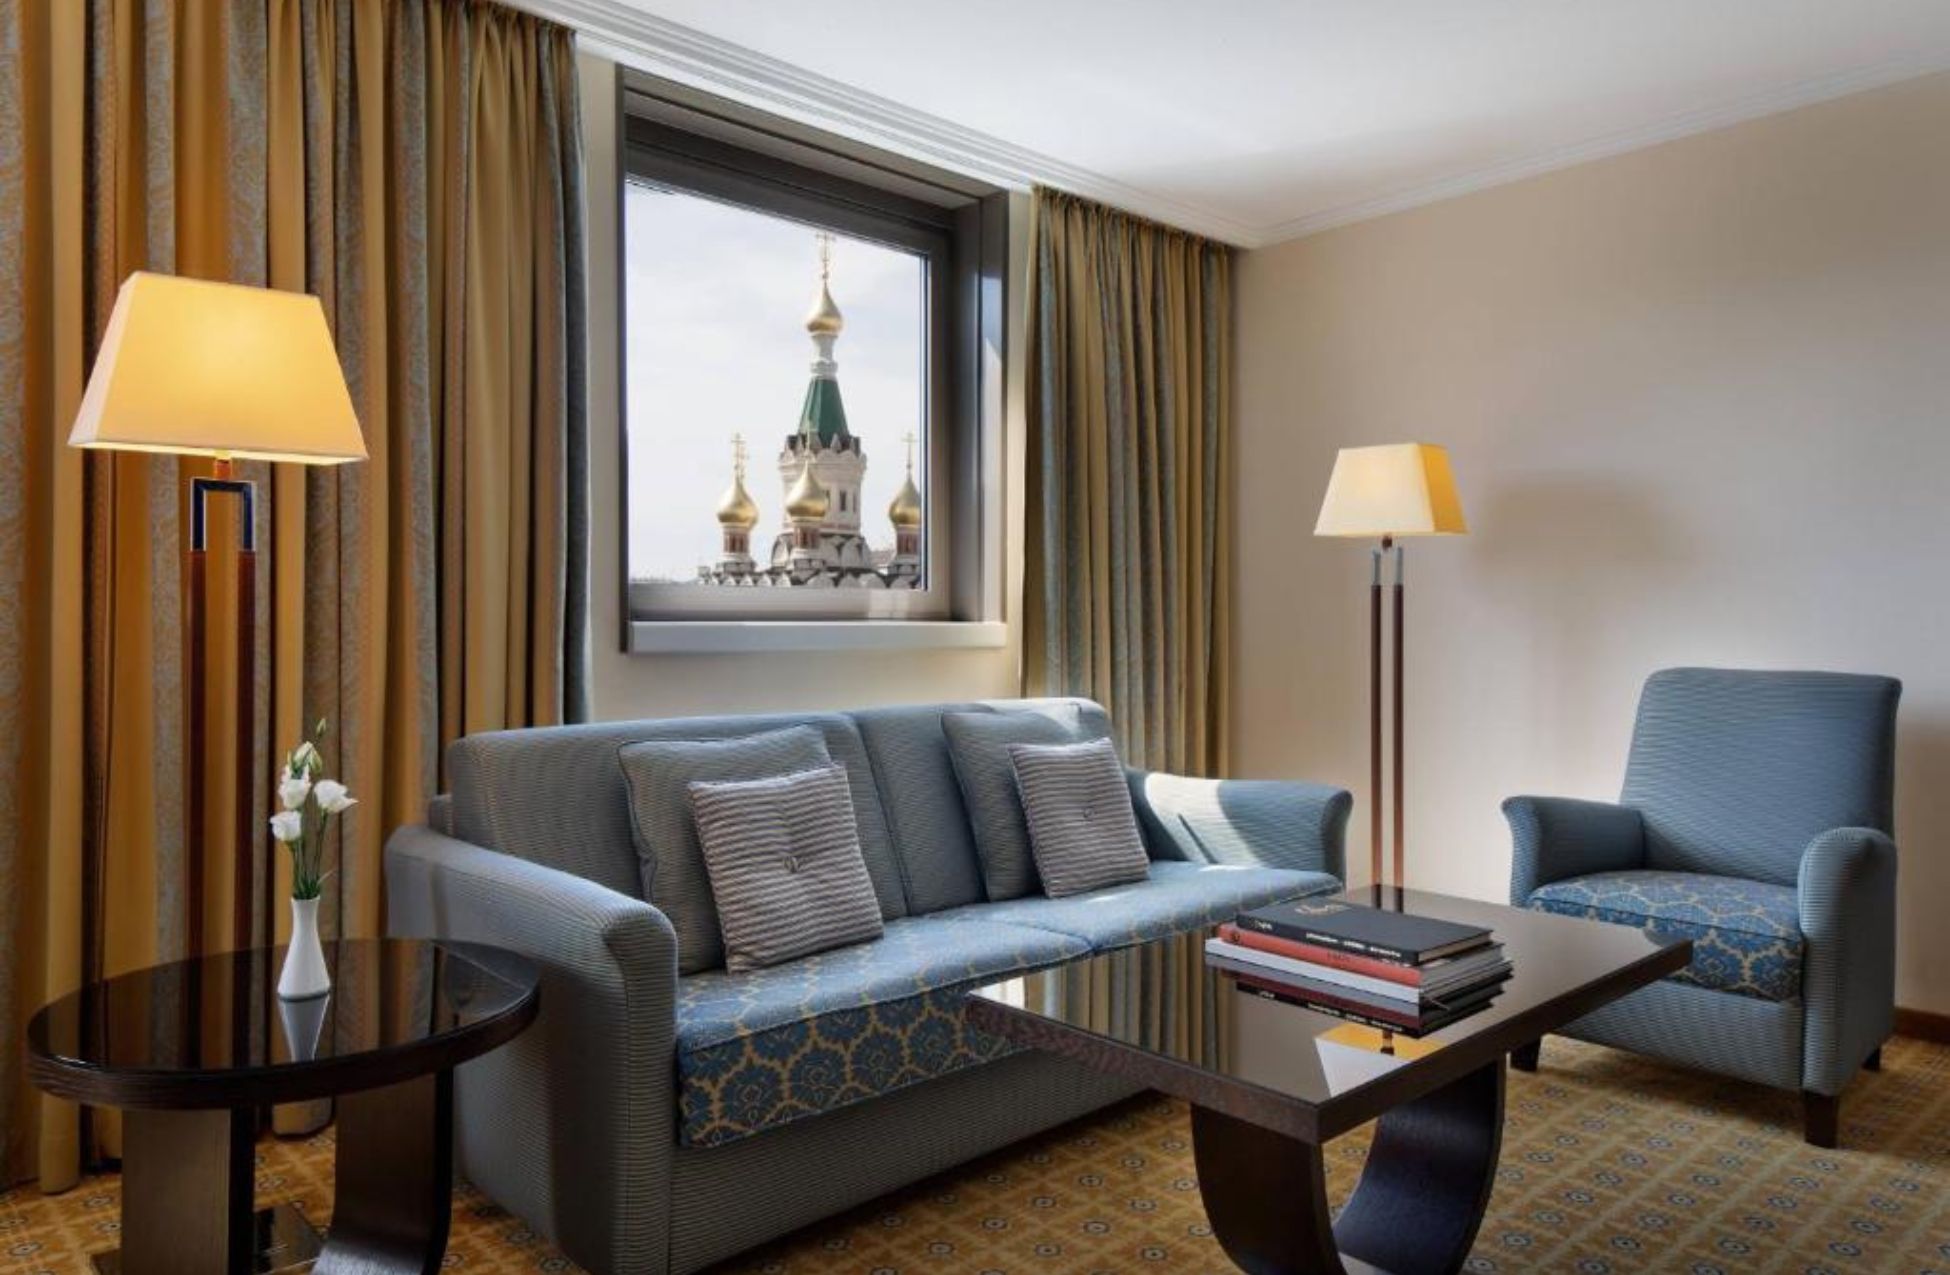 Imperial Riding School Renaissance Vienna Hotel - Best Hotels In Vienna